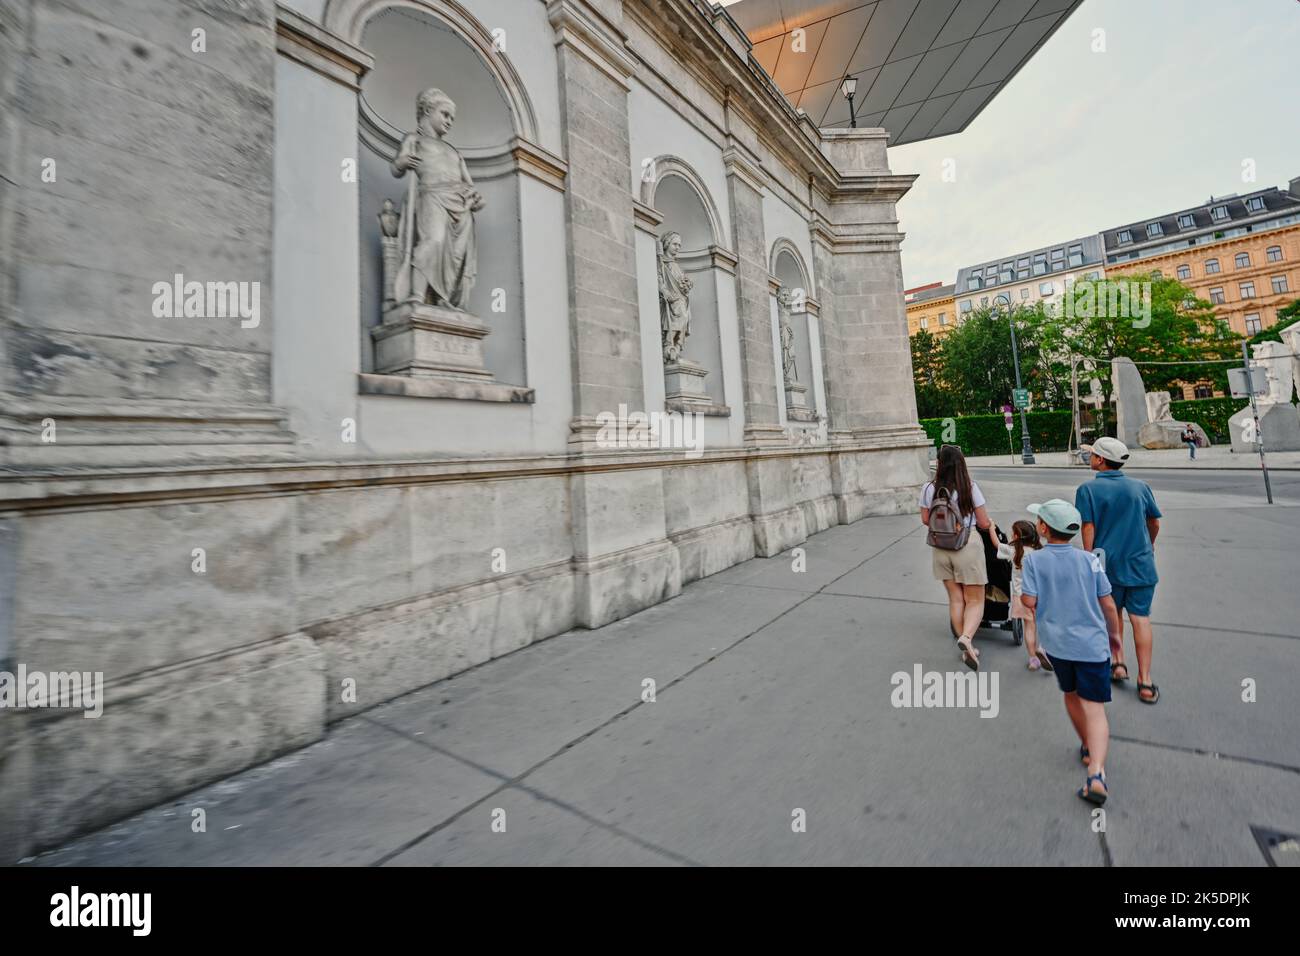 Vienne, Autriche - 17 mai 2022: Mère avec enfants marchant près du musée Albertina dans le Stadt de Vienne, Autriche. Banque D'Images